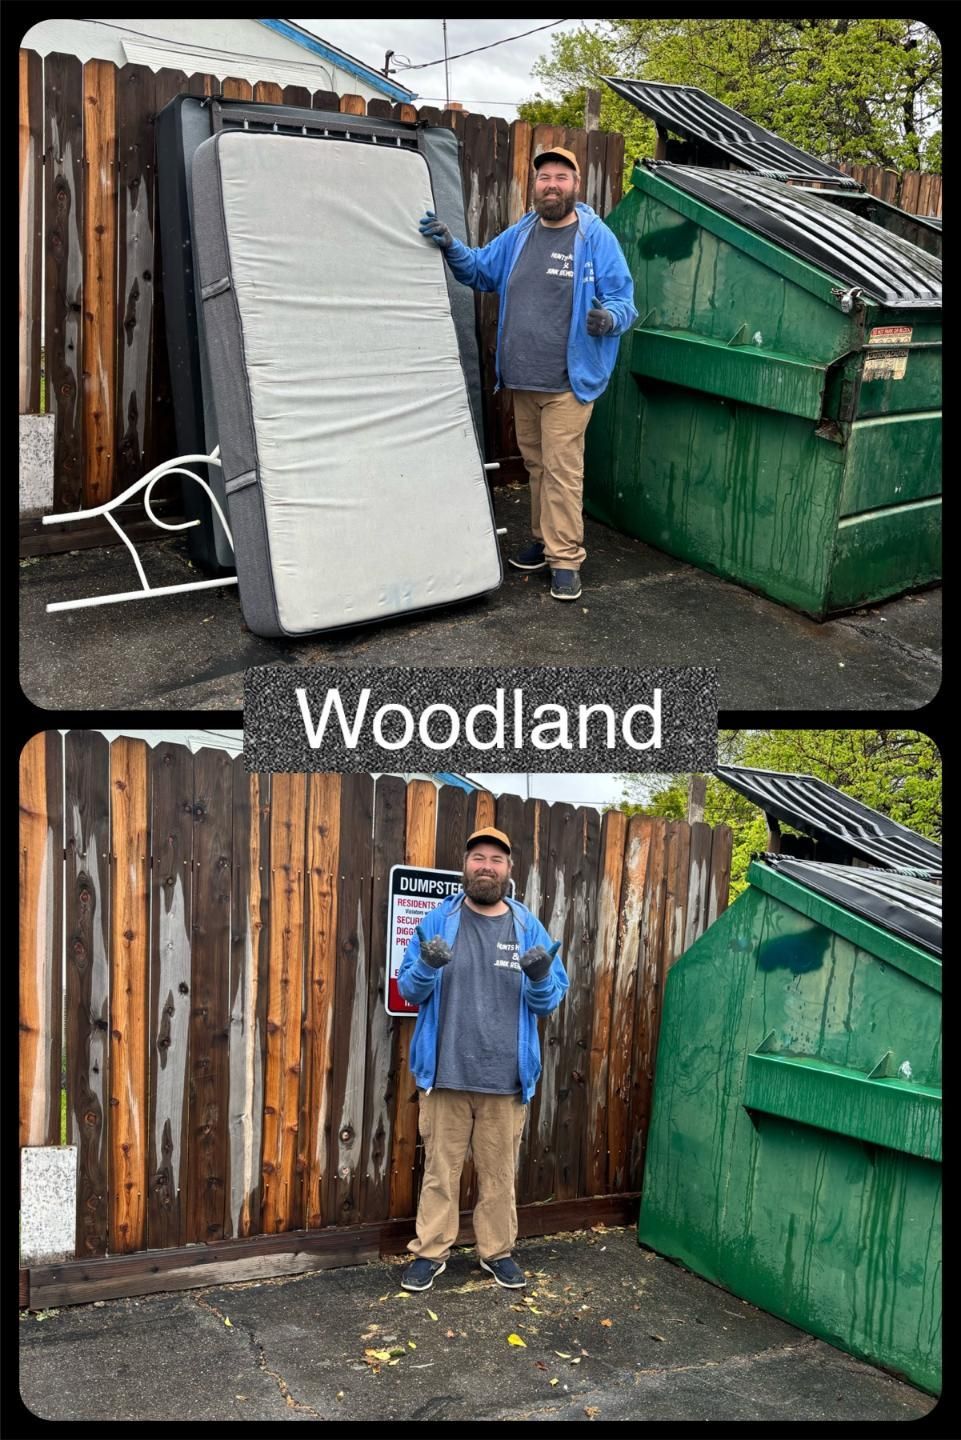 A man is standing next to a dumpster holding a mattress.